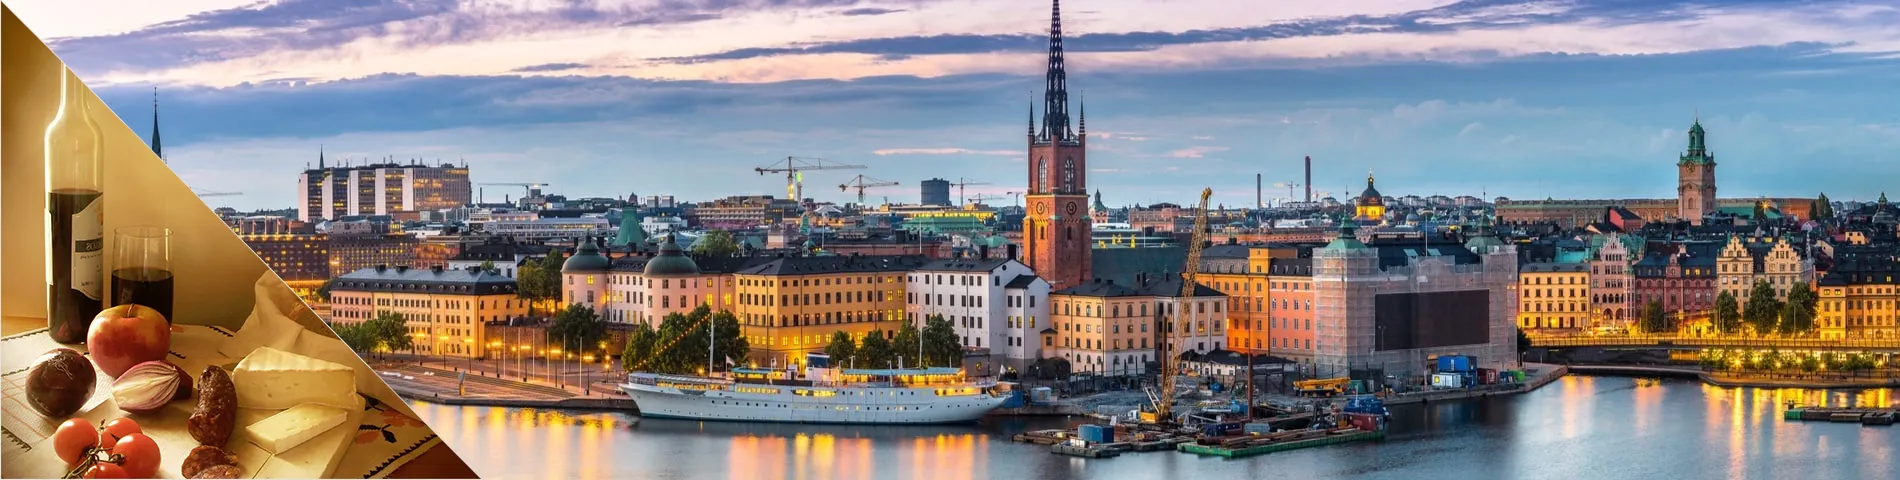 Stockholm - Suédois & Culture